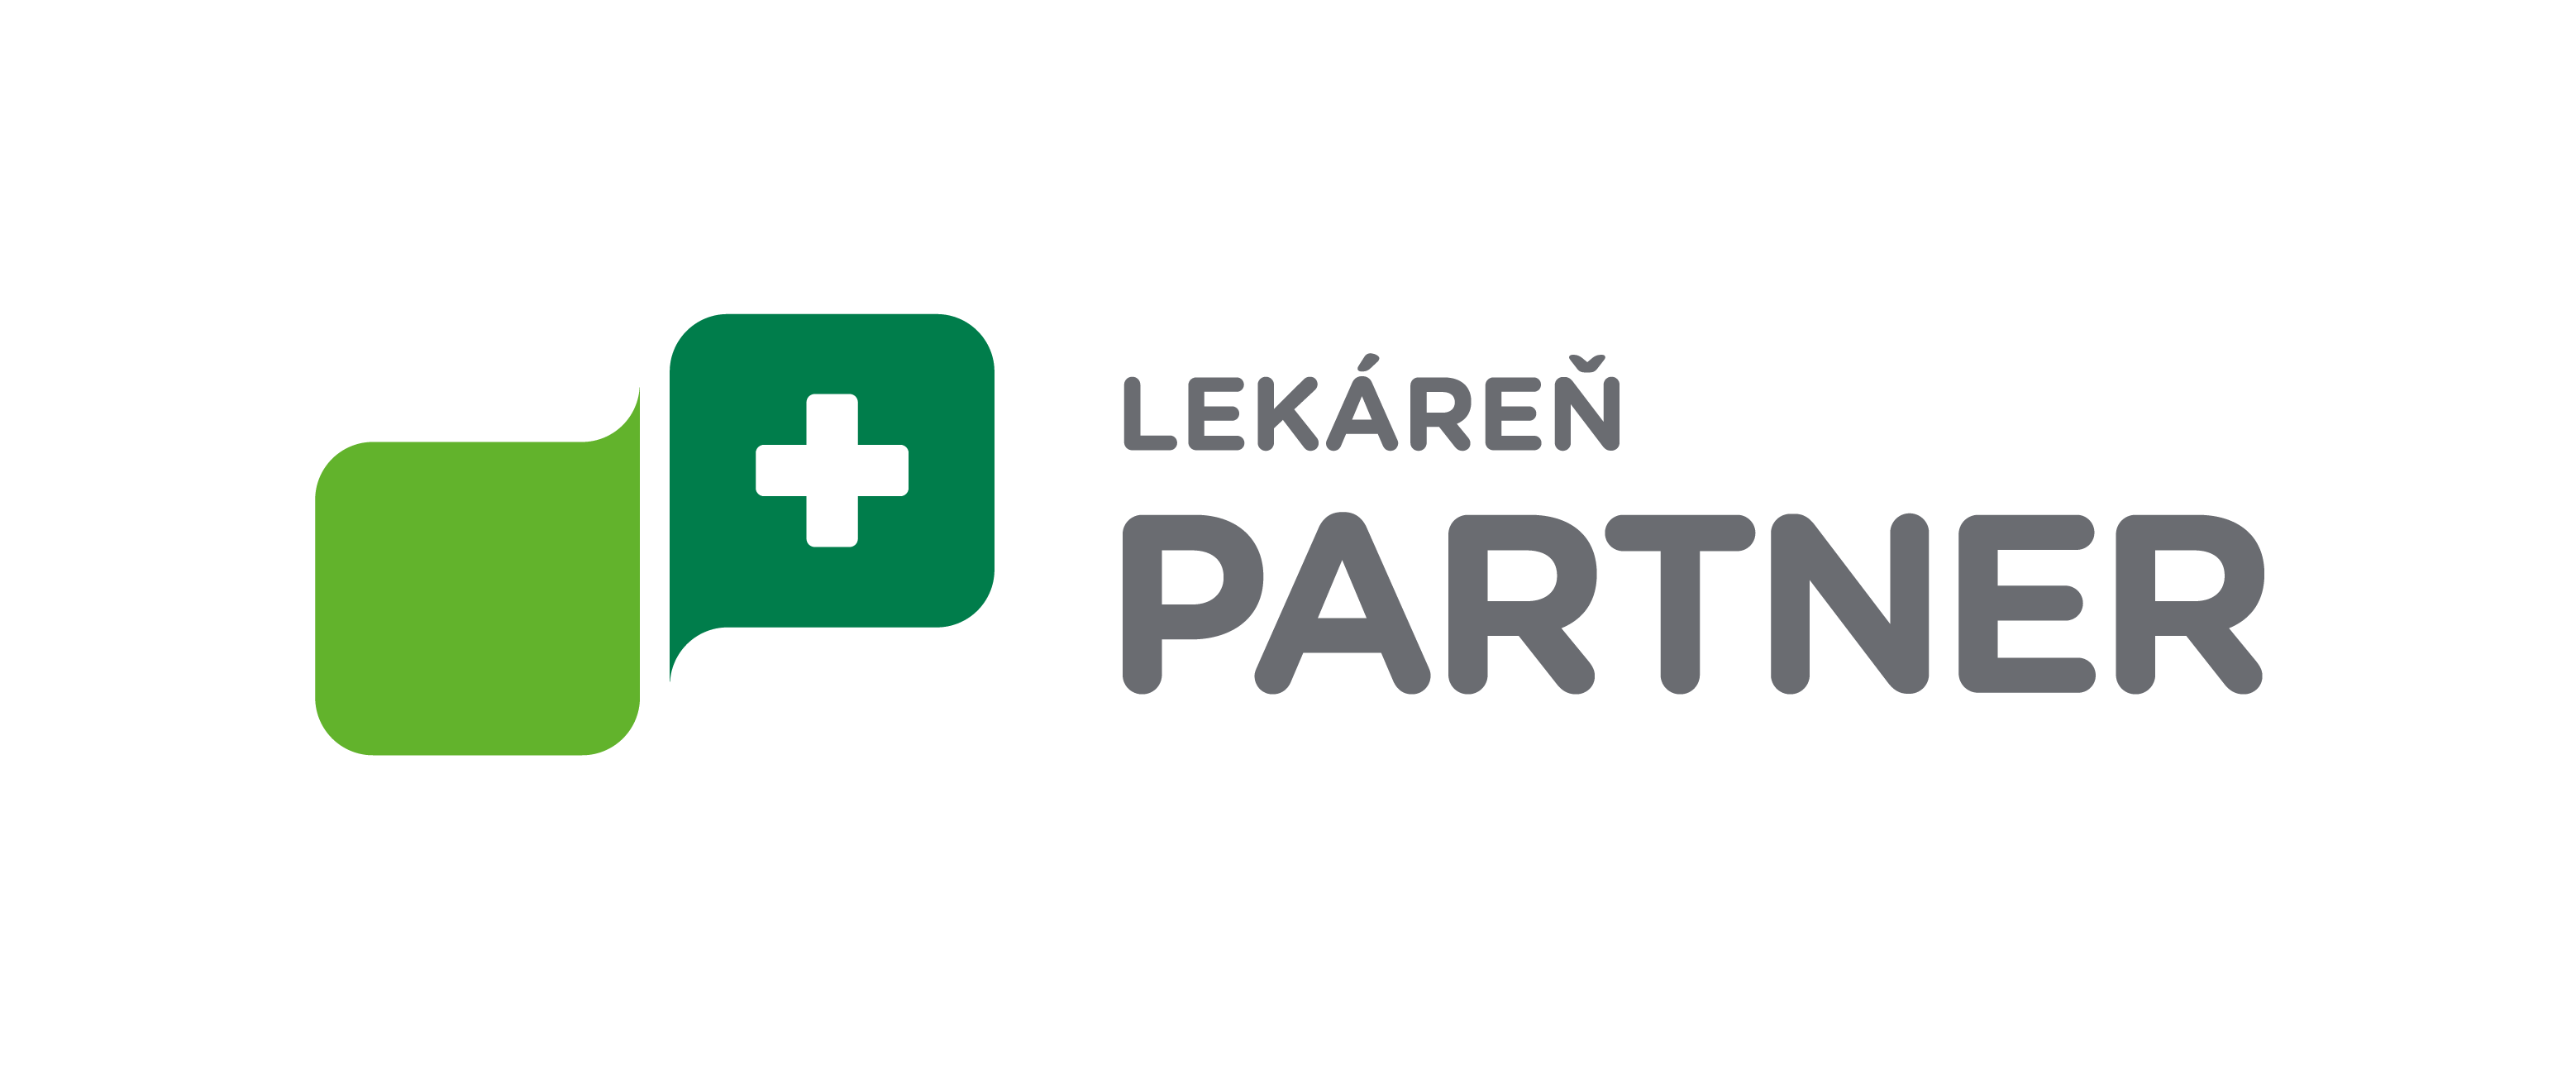 PartnerLekaren_logo_zakladne-horizontal_farebne